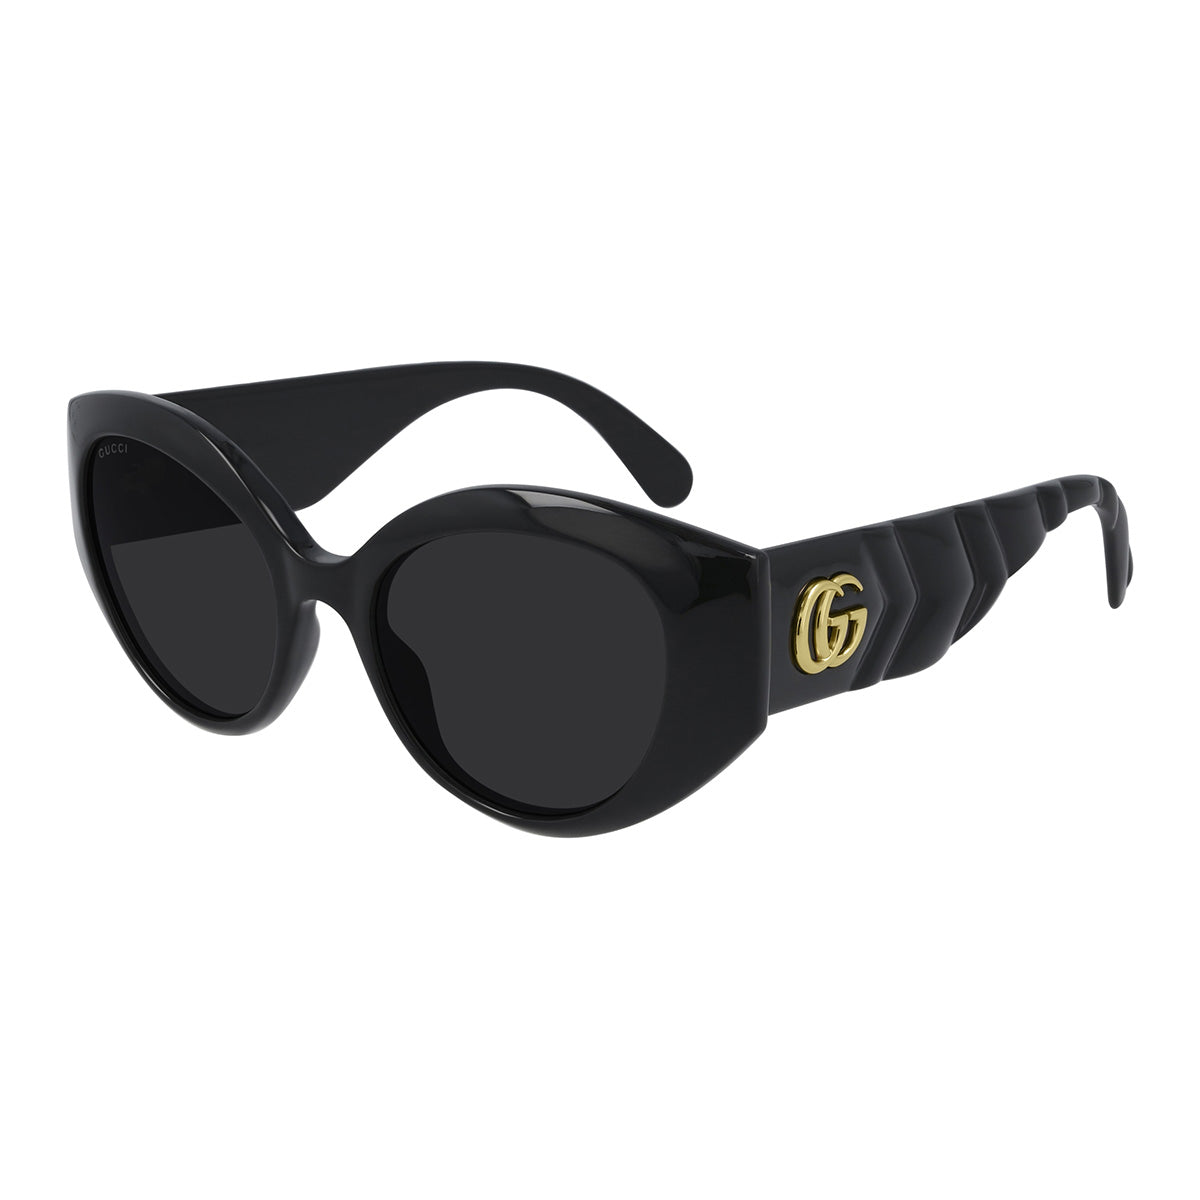 GG0809S – Icons Miami Eyewear